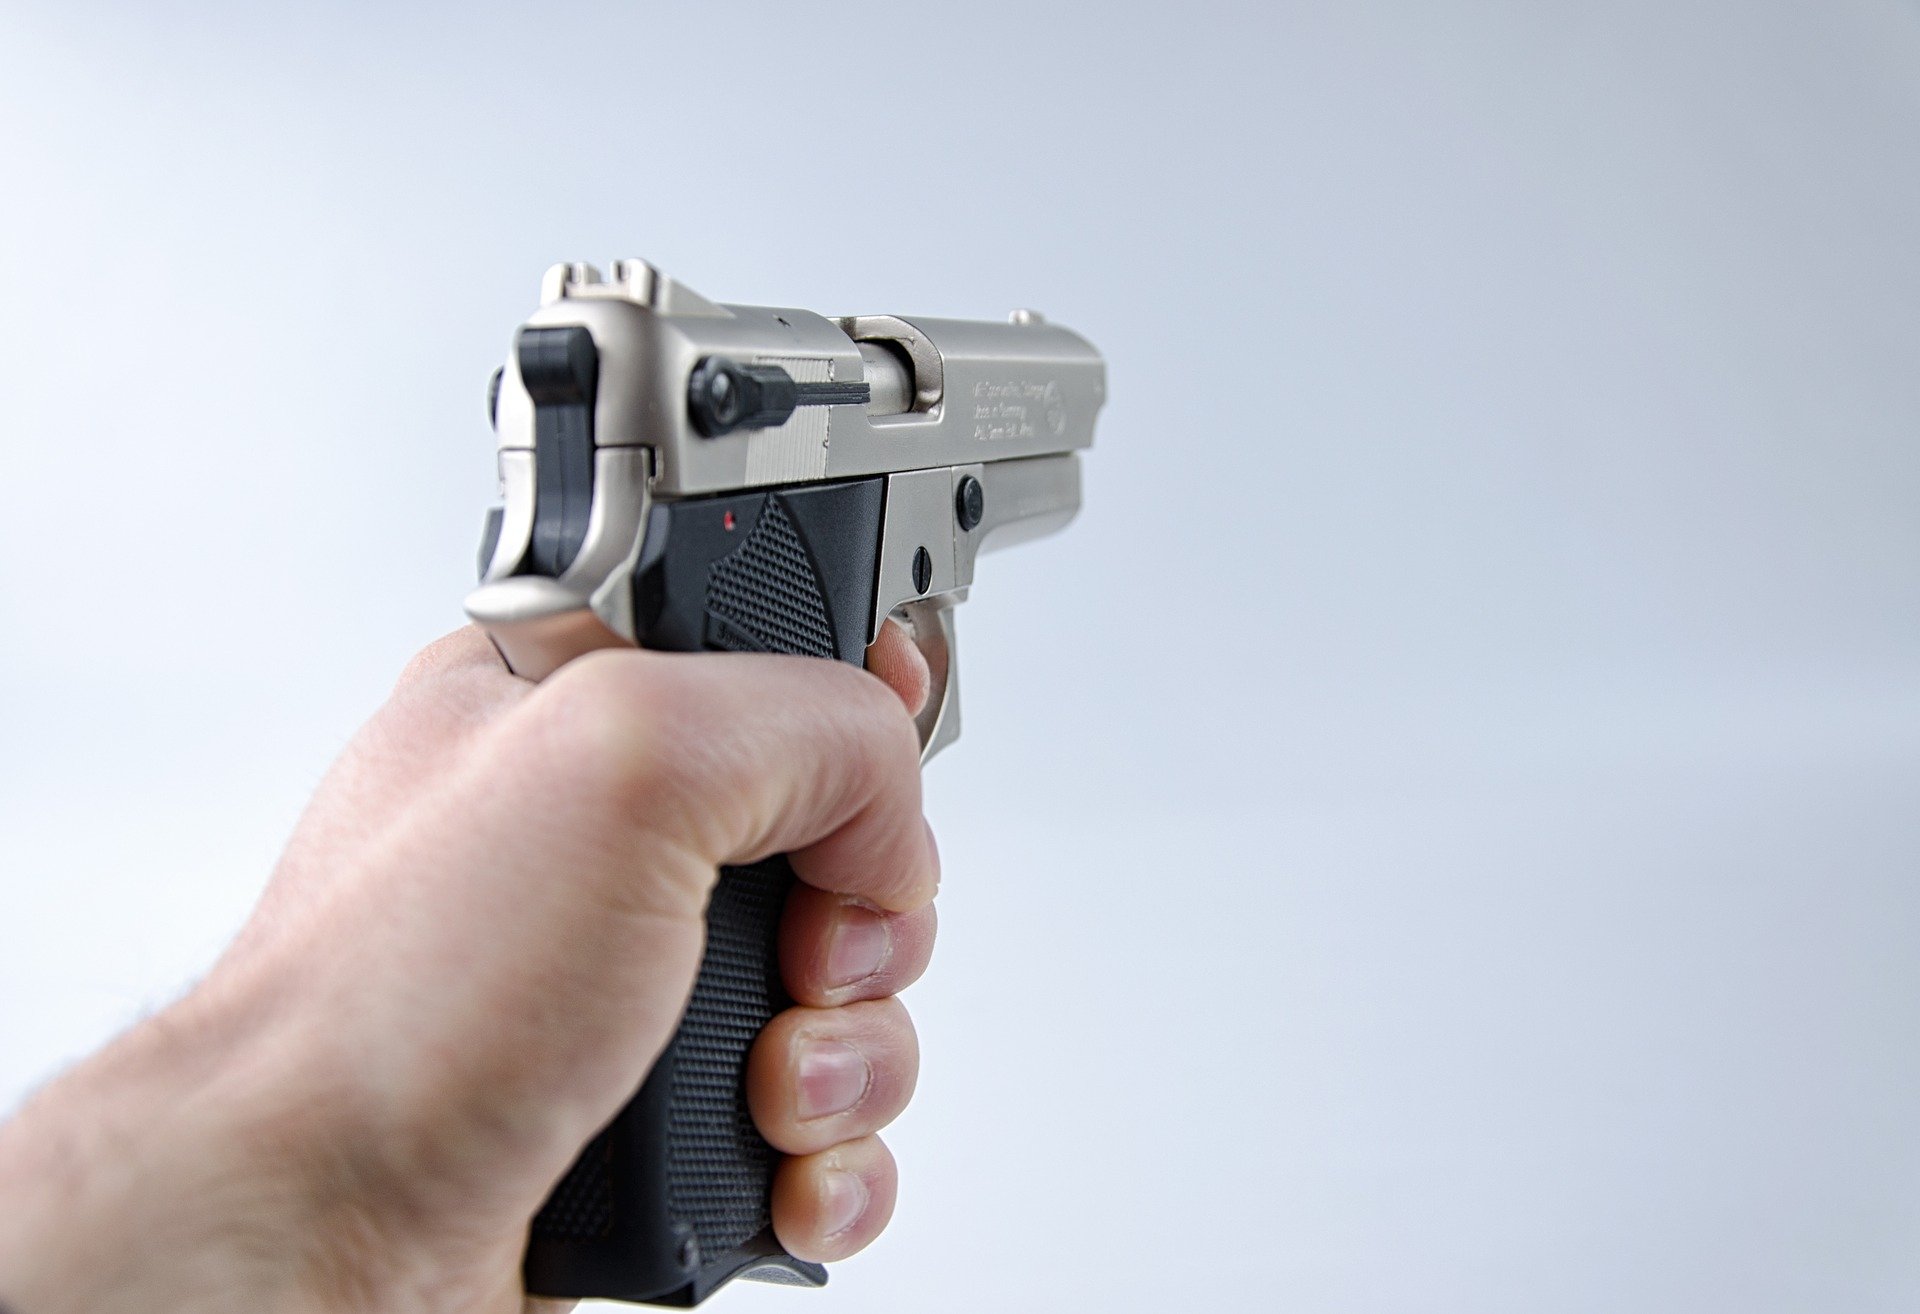 A photo of an aimed handgun | Source: Pixabay